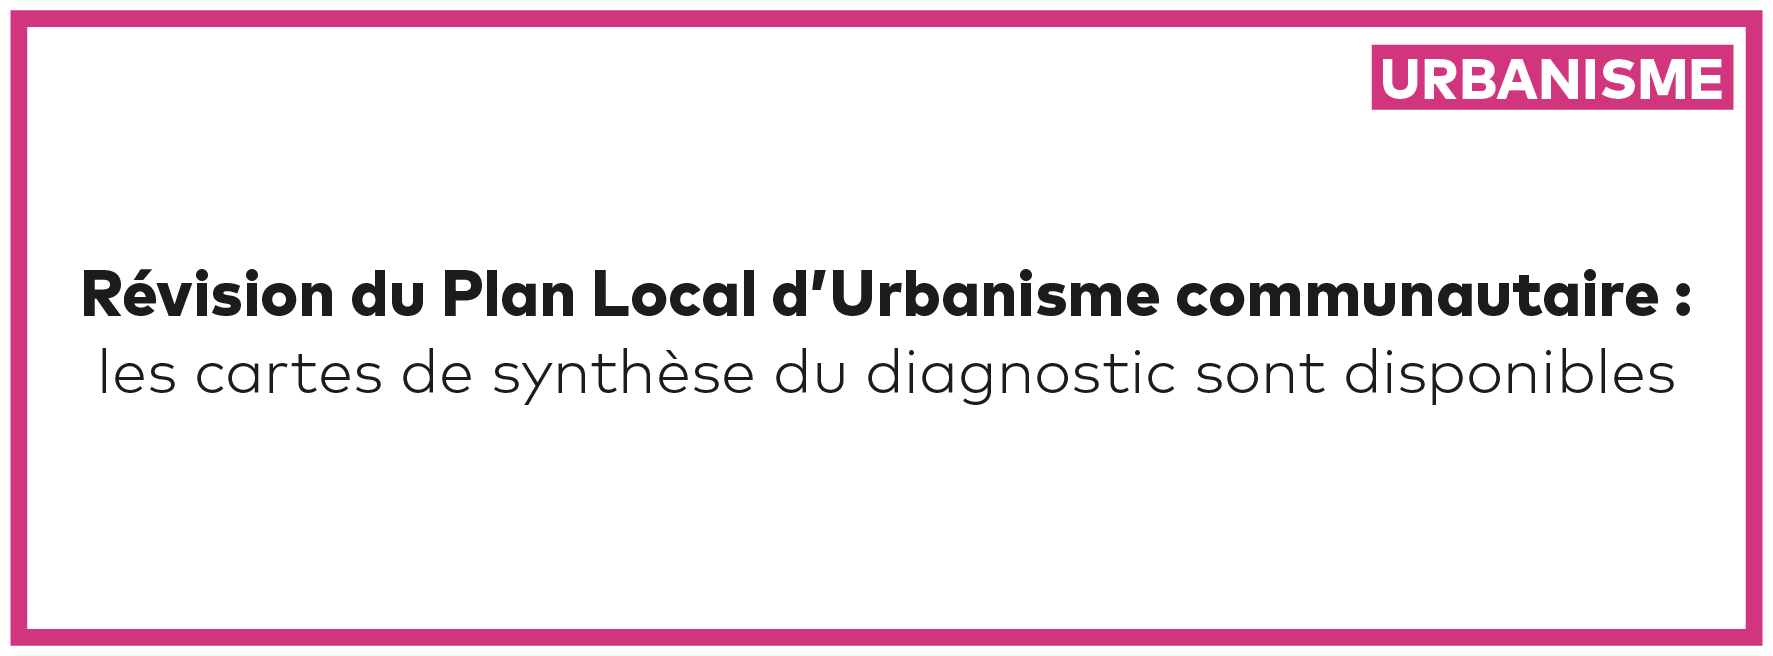 Révision du Plan Local d’Urbanisme communautaire : les cartes de synthèse du diagnostic sont disponibles 